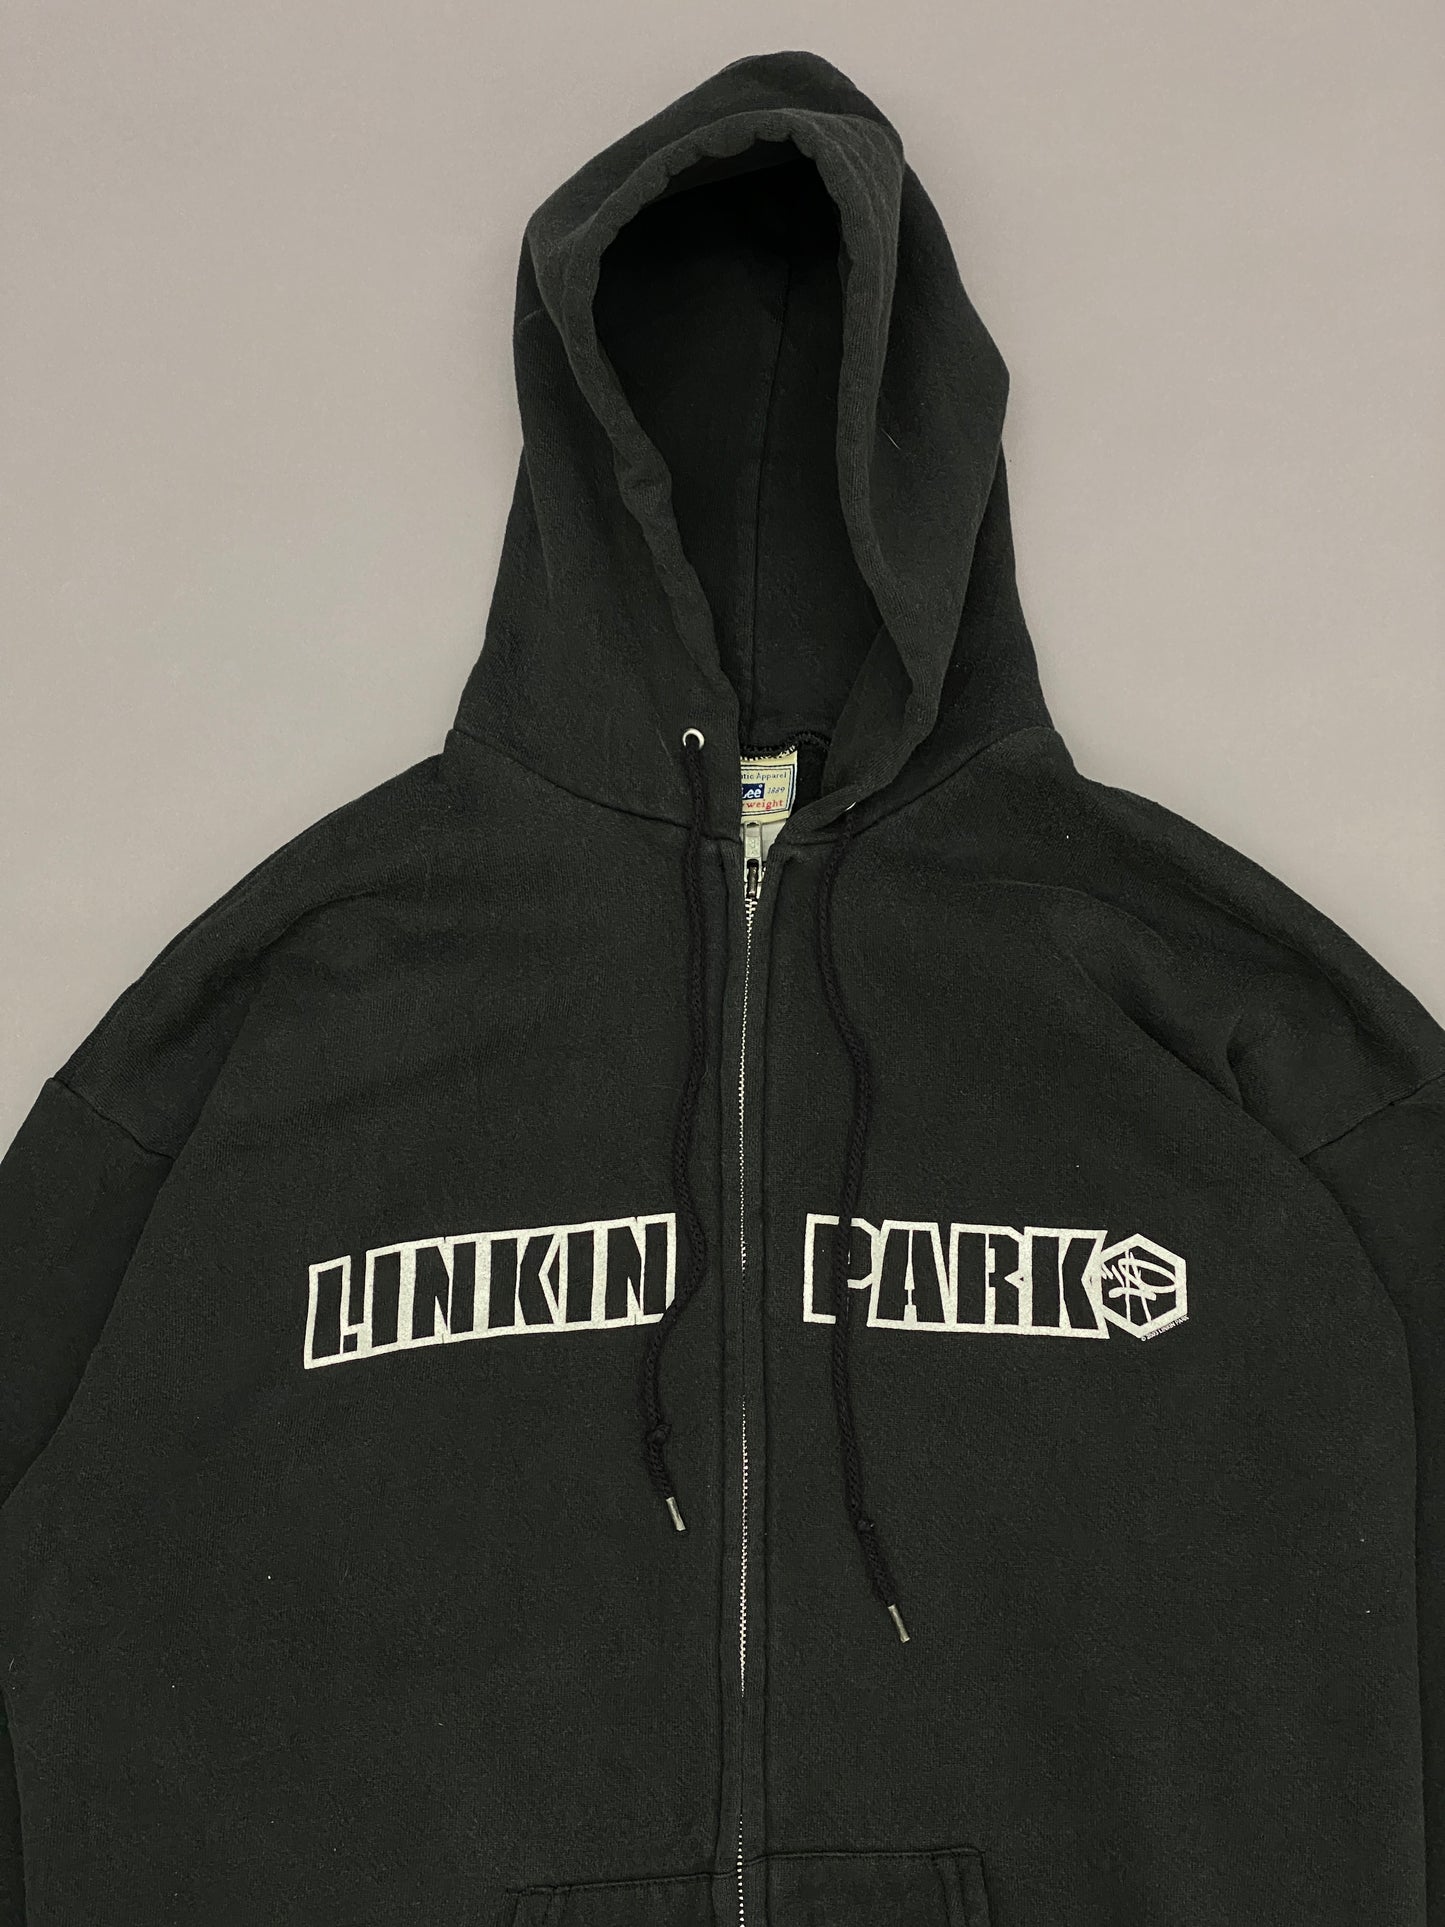 Hoodie Linkin Park 2003 Vintage